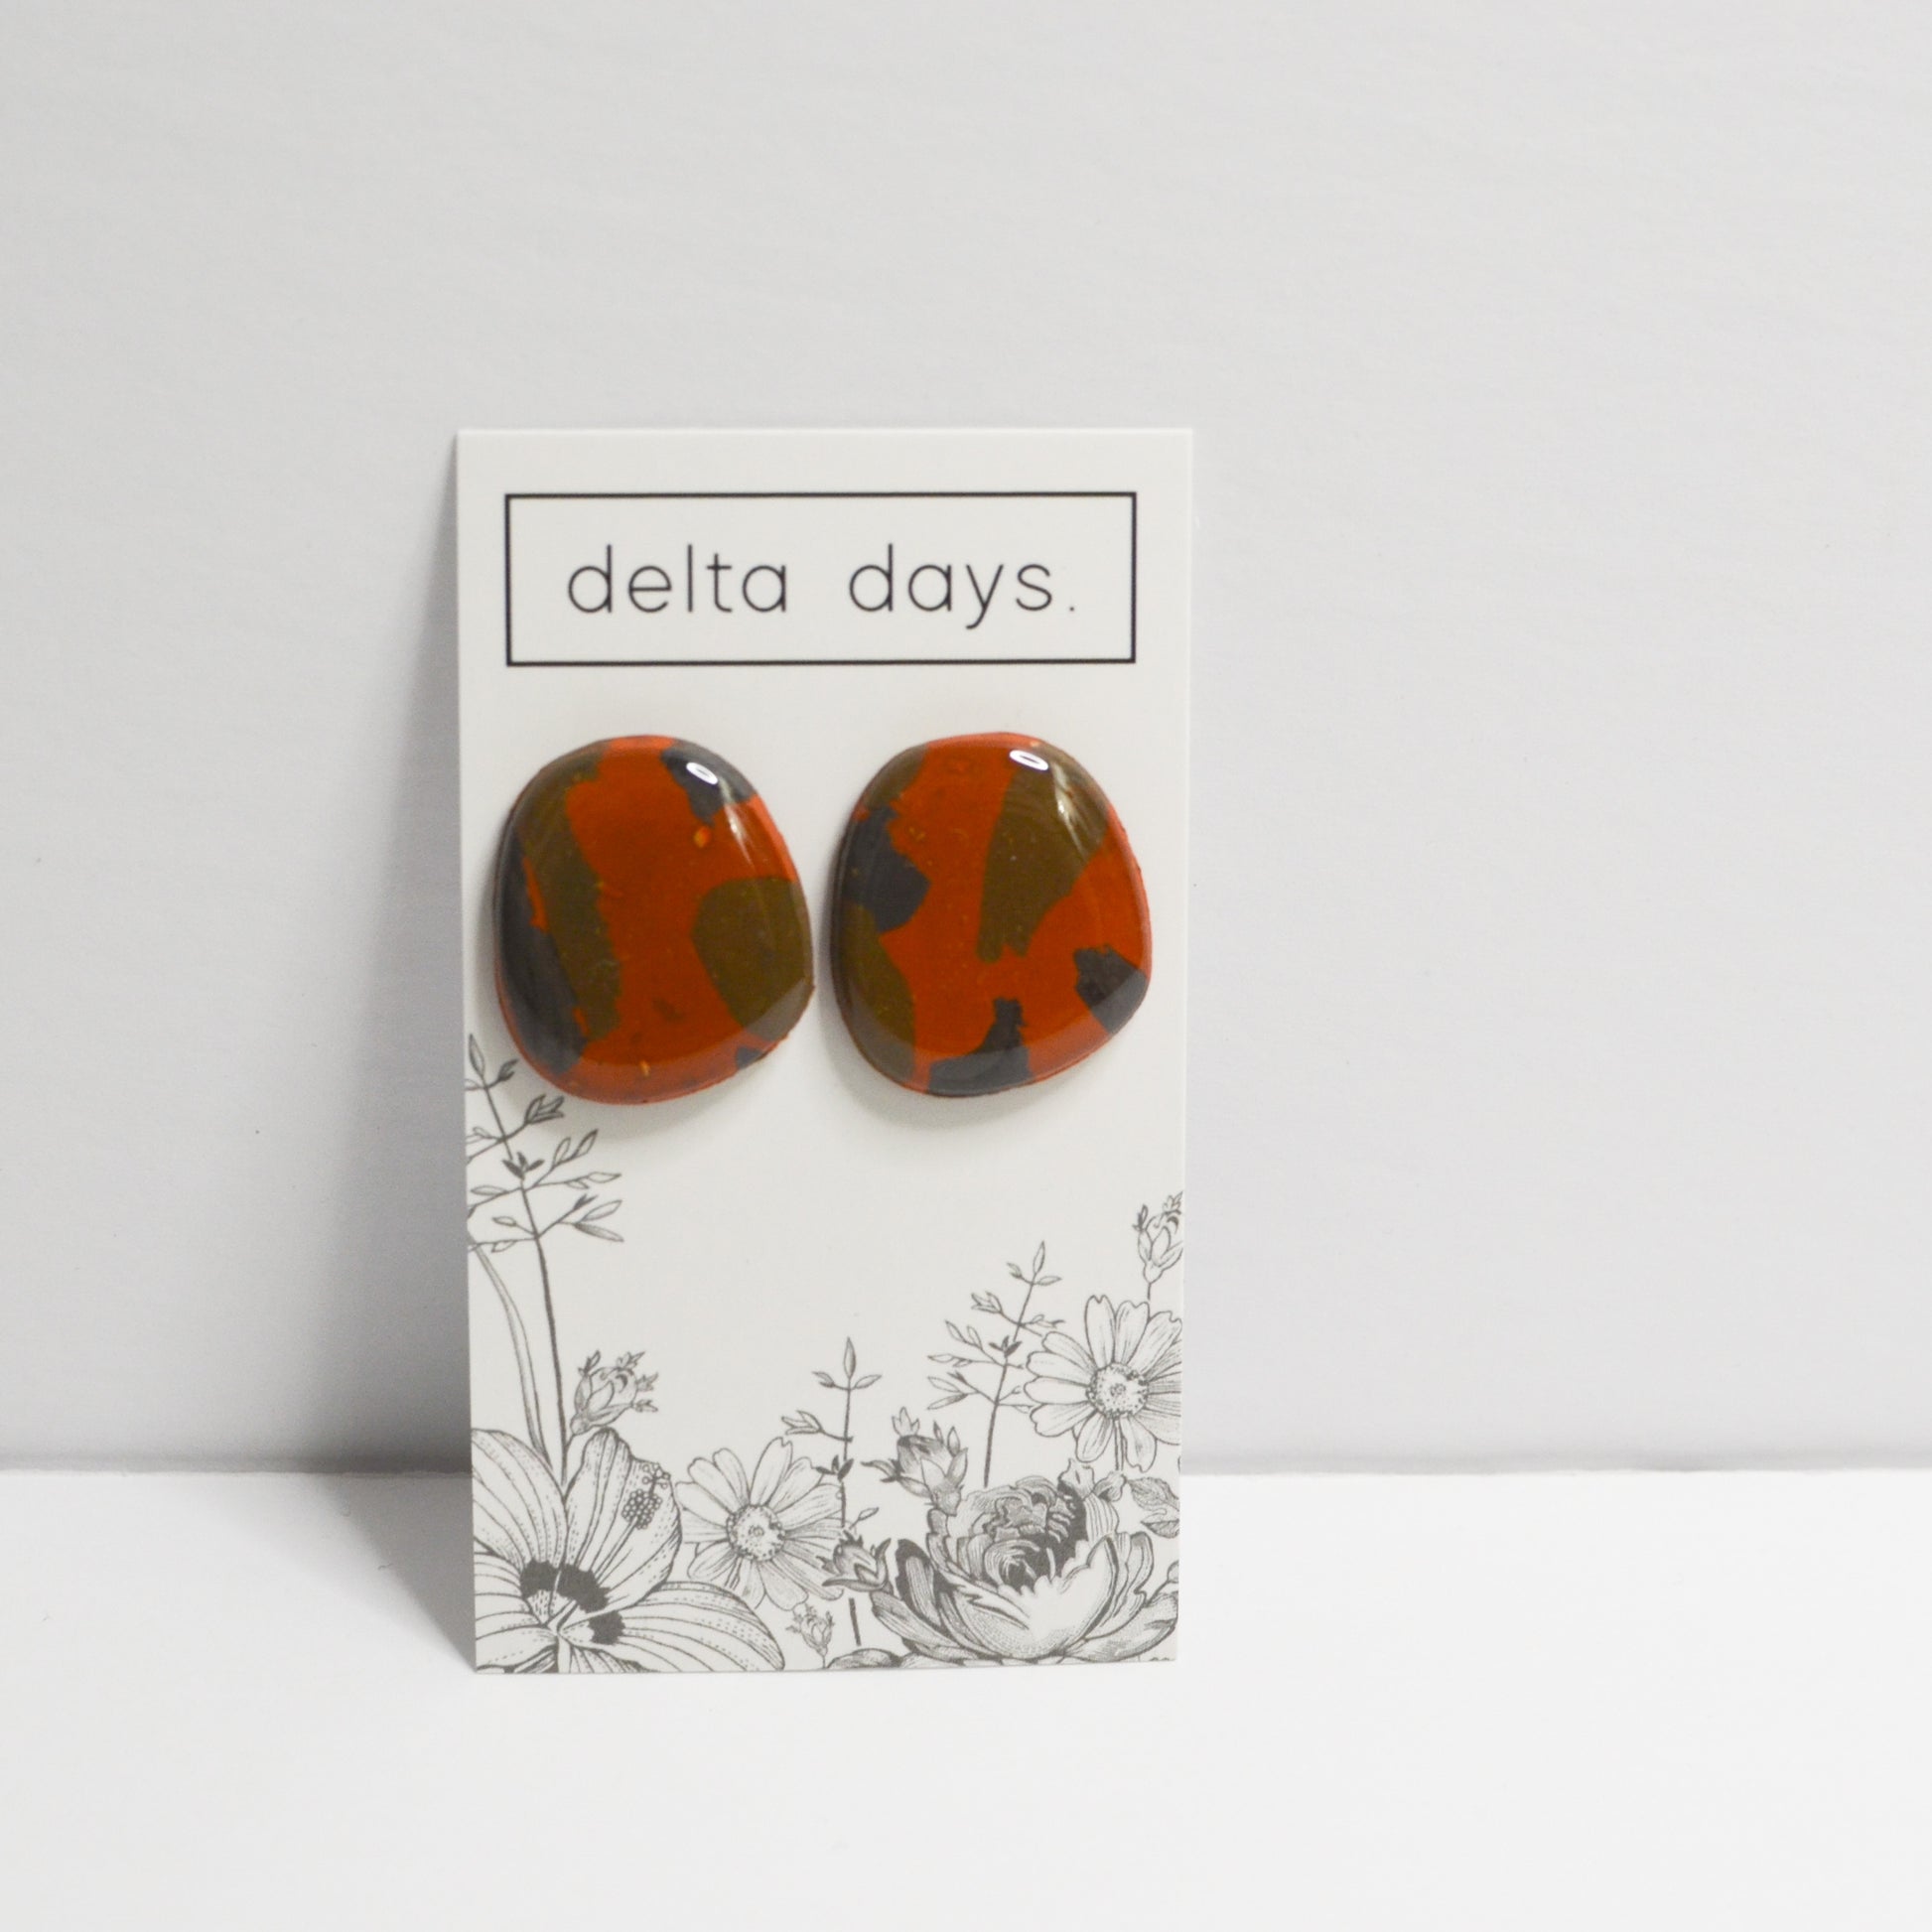 04 Delta Days. X Details - The Details Boutique